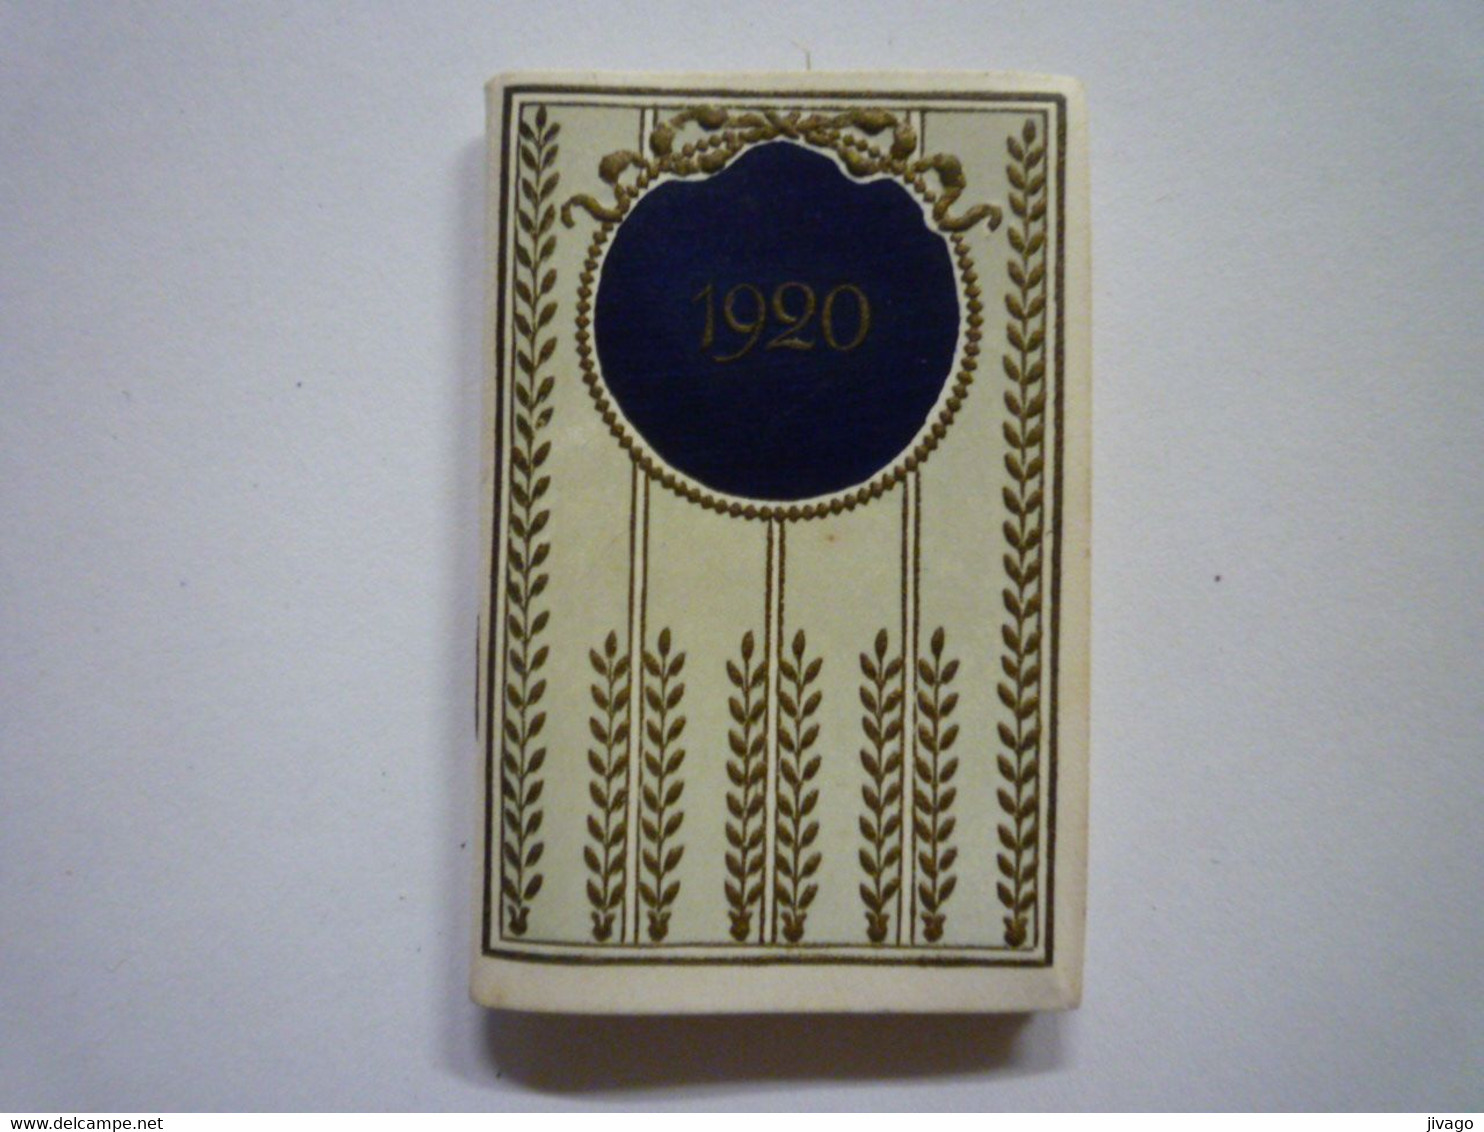 2021 - 231  Joli MINI CALENDRIER 1920  (format 3,5 X 5,5 Cm)   XXX - Formato Piccolo : 1901-20